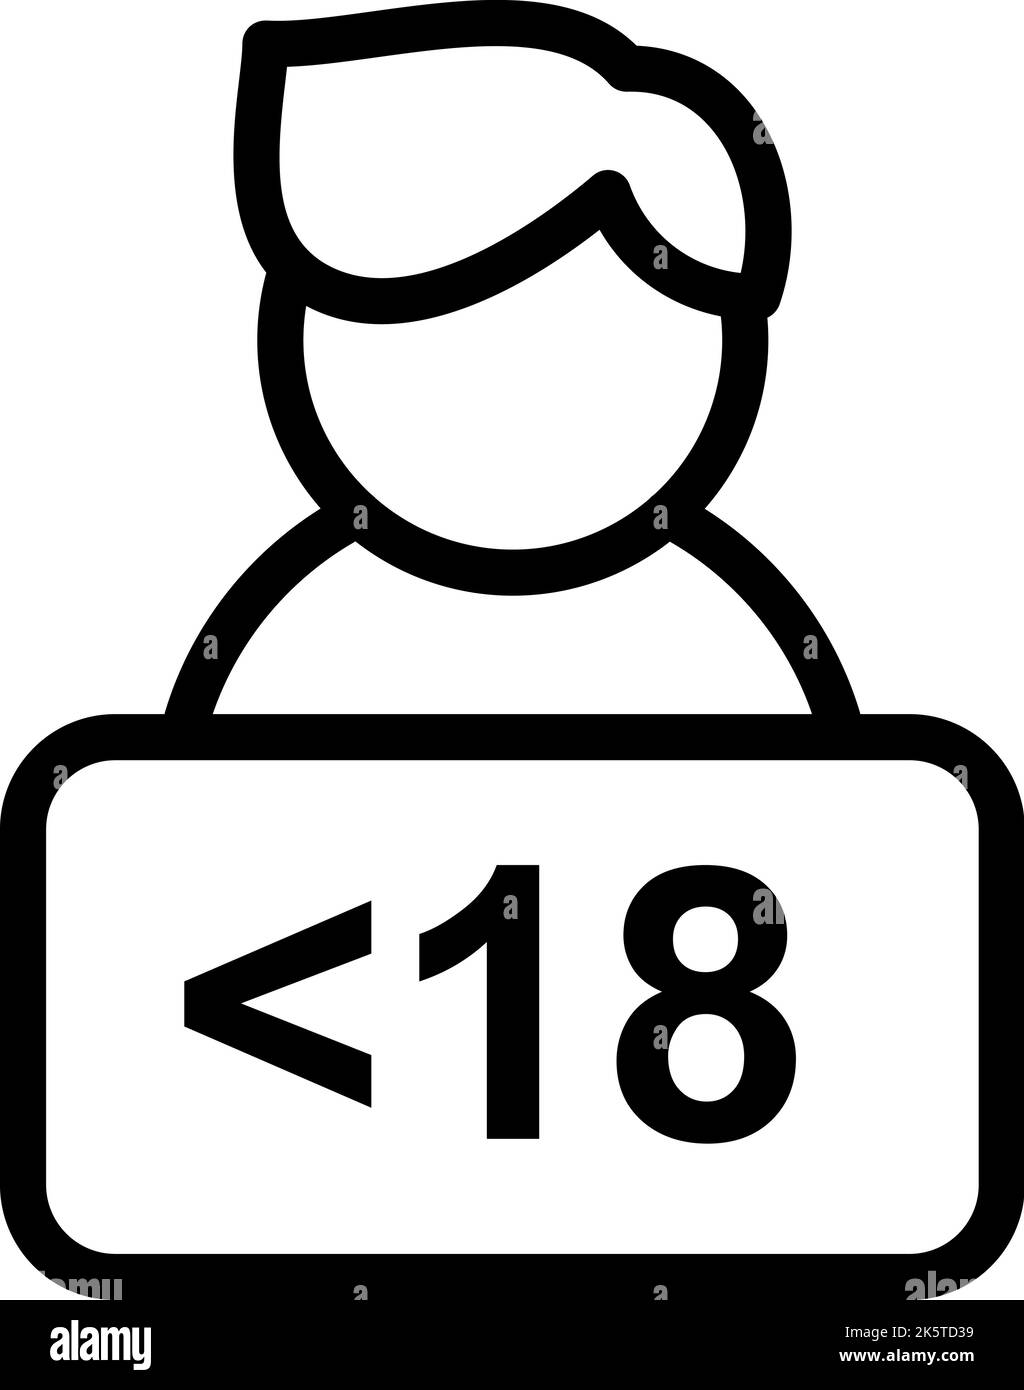 Icona di simbolo isolato nero per le persone sotto i diciotto anni. Contenuto per adulti di età 18 anni vietato per il design dei segni per bambini Illustrazione Vettoriale